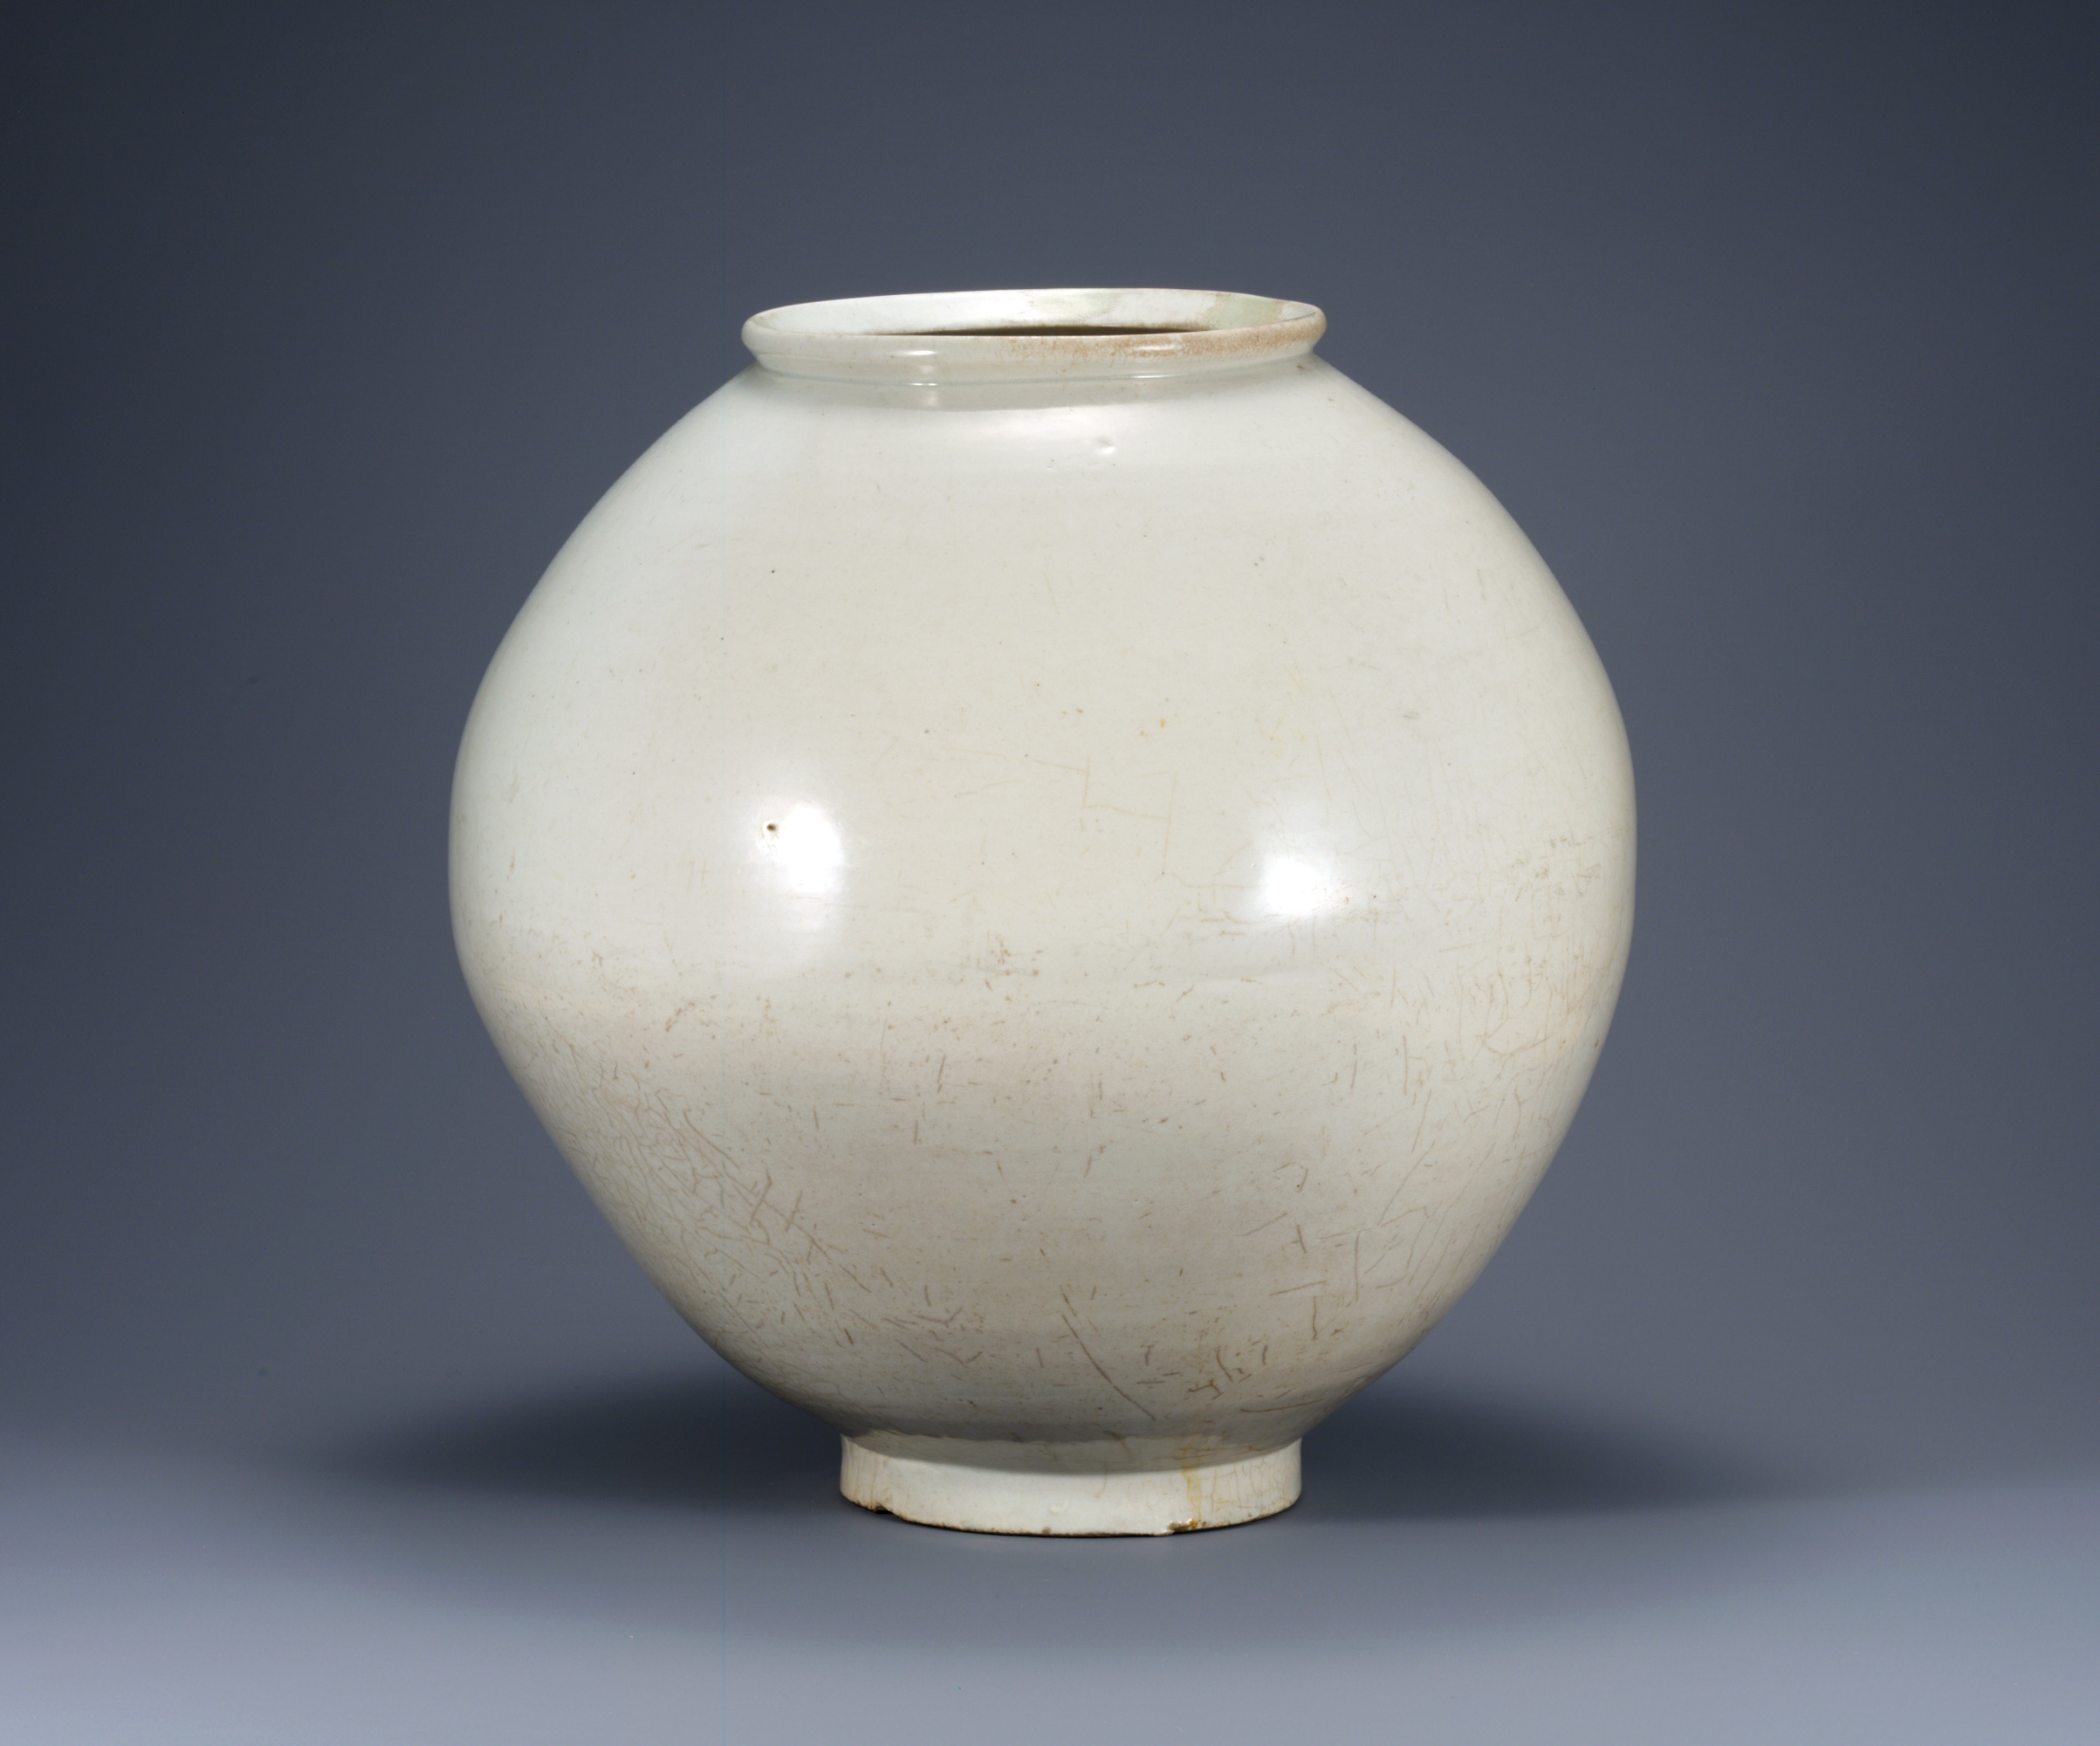 Smarthistory – White porcelain moon jars